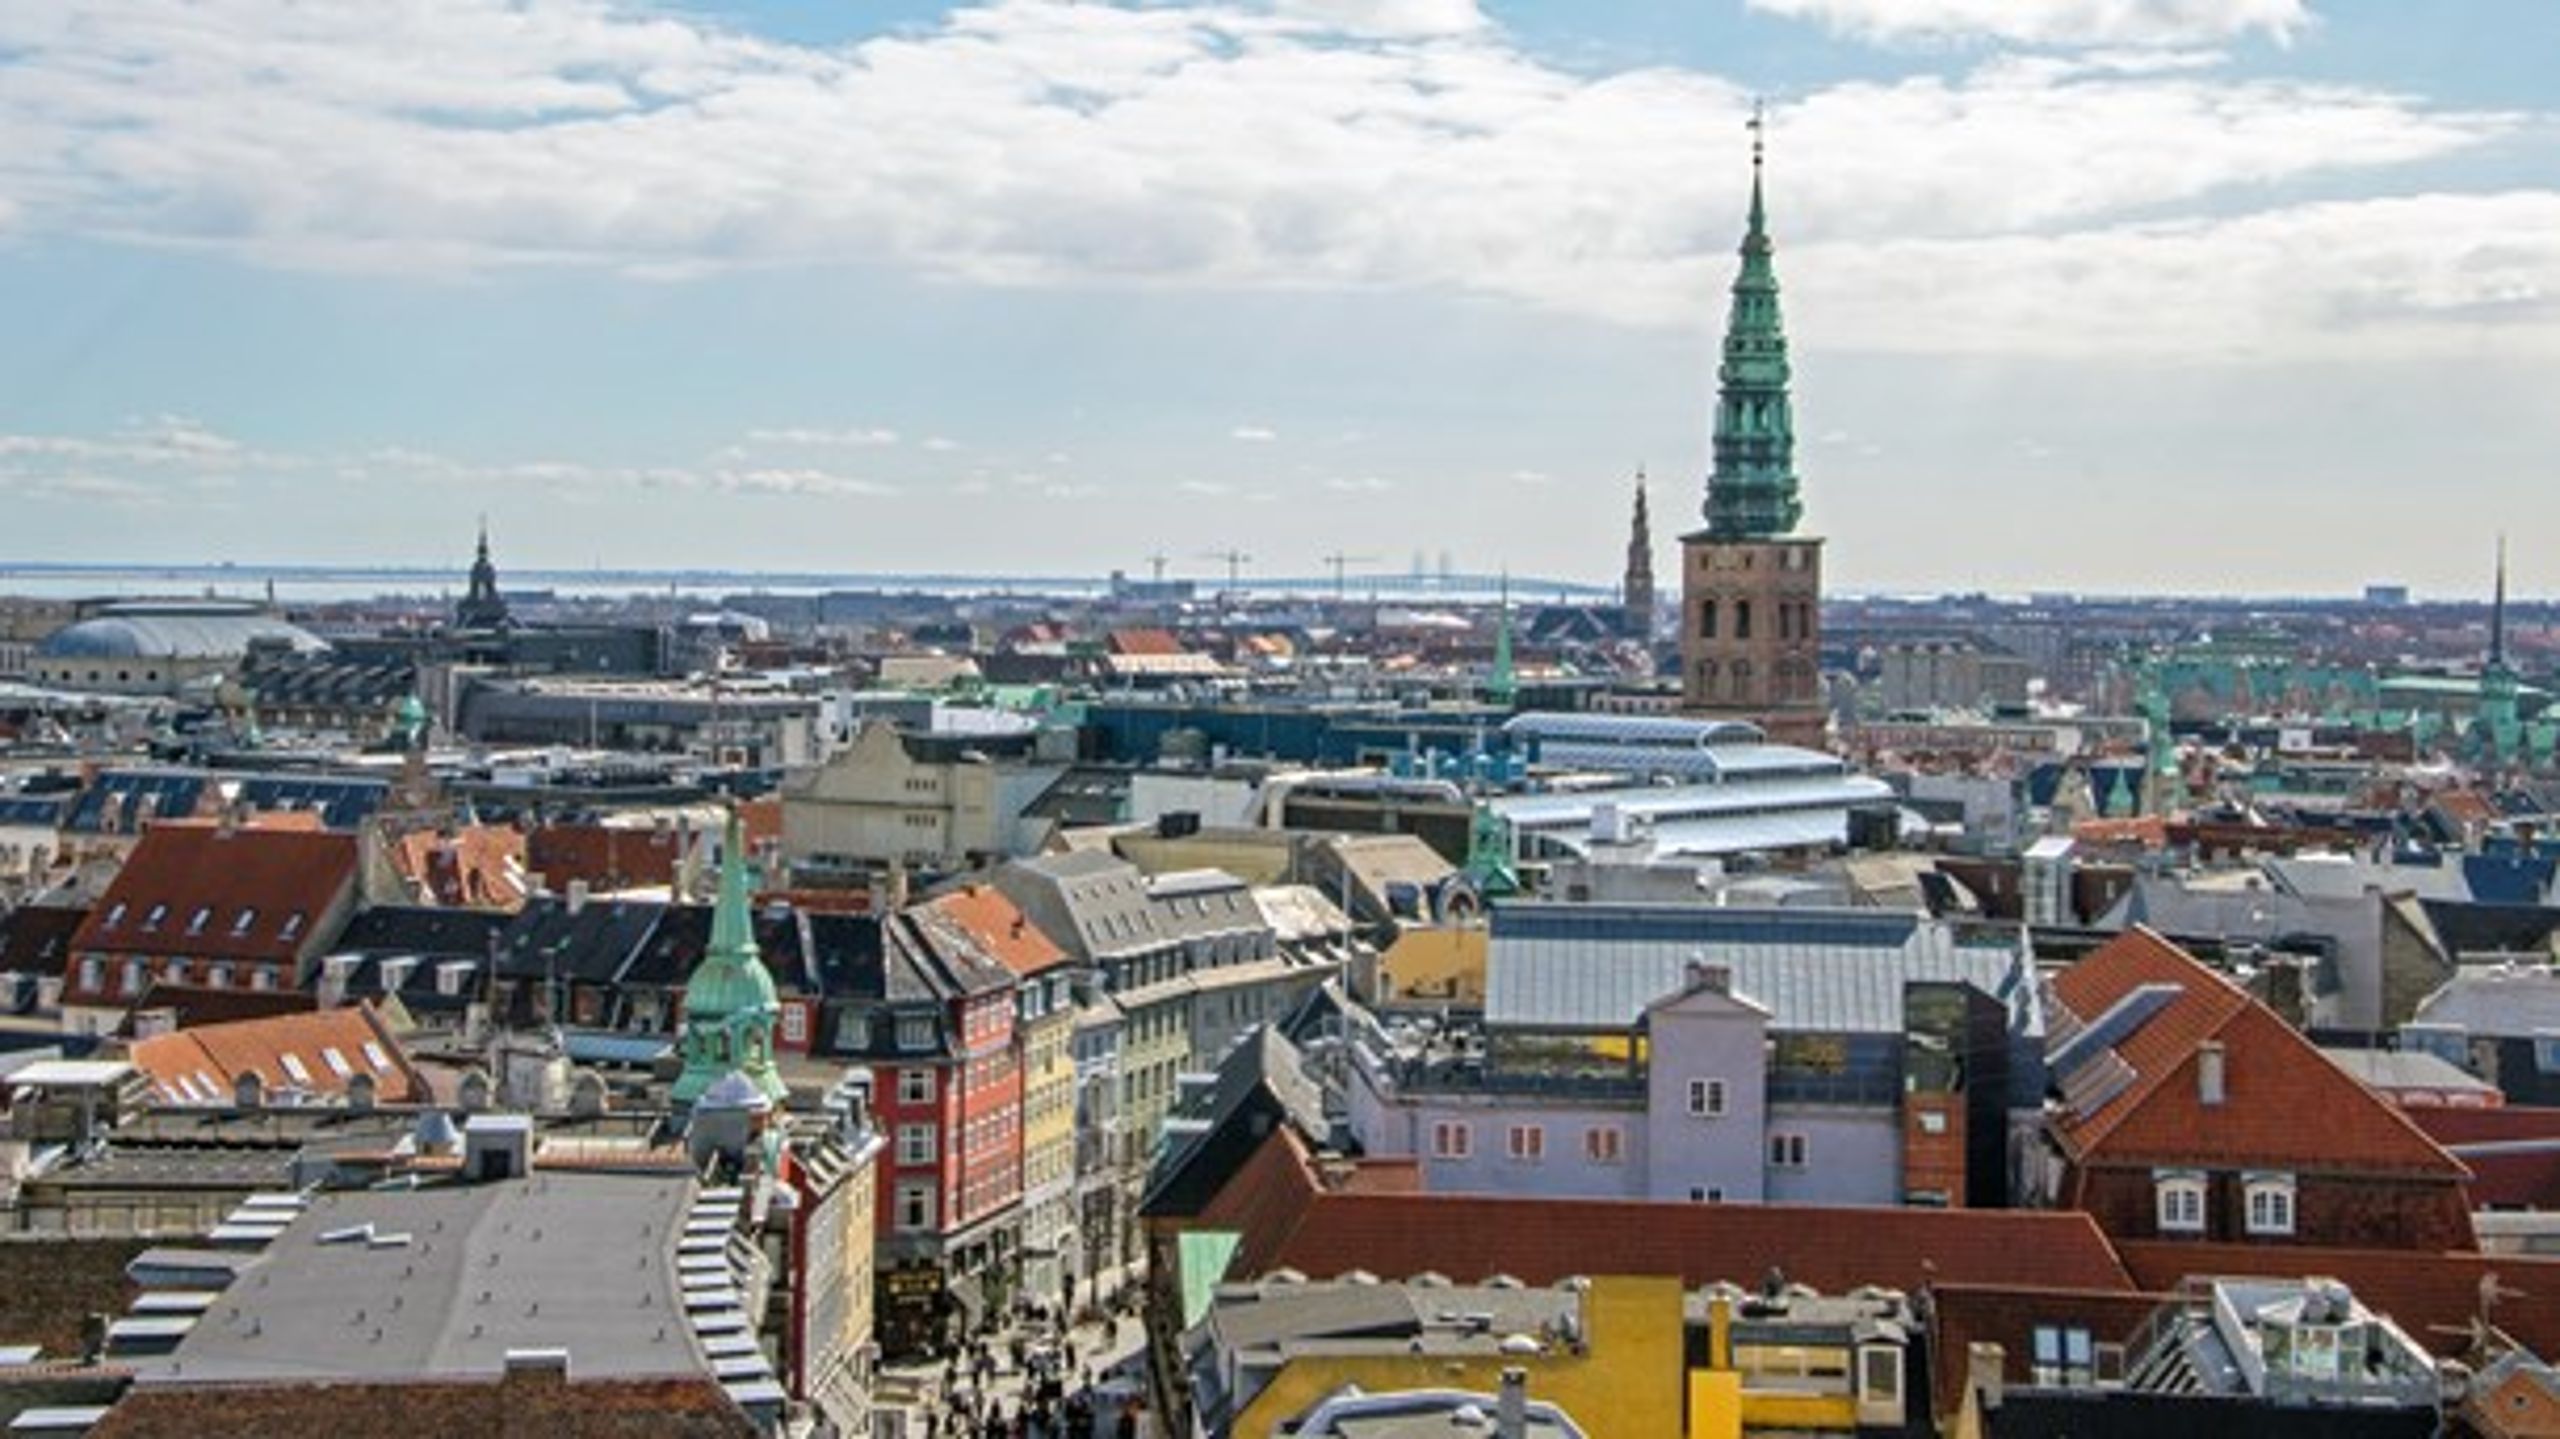 "Danmarks største byer er langt fremme globalt set, når det drejer sig om at være bæredygtige, men hvis vi melder os ud af det globale
fællesskab om at skabe gode byer, bliver vi overhalet."